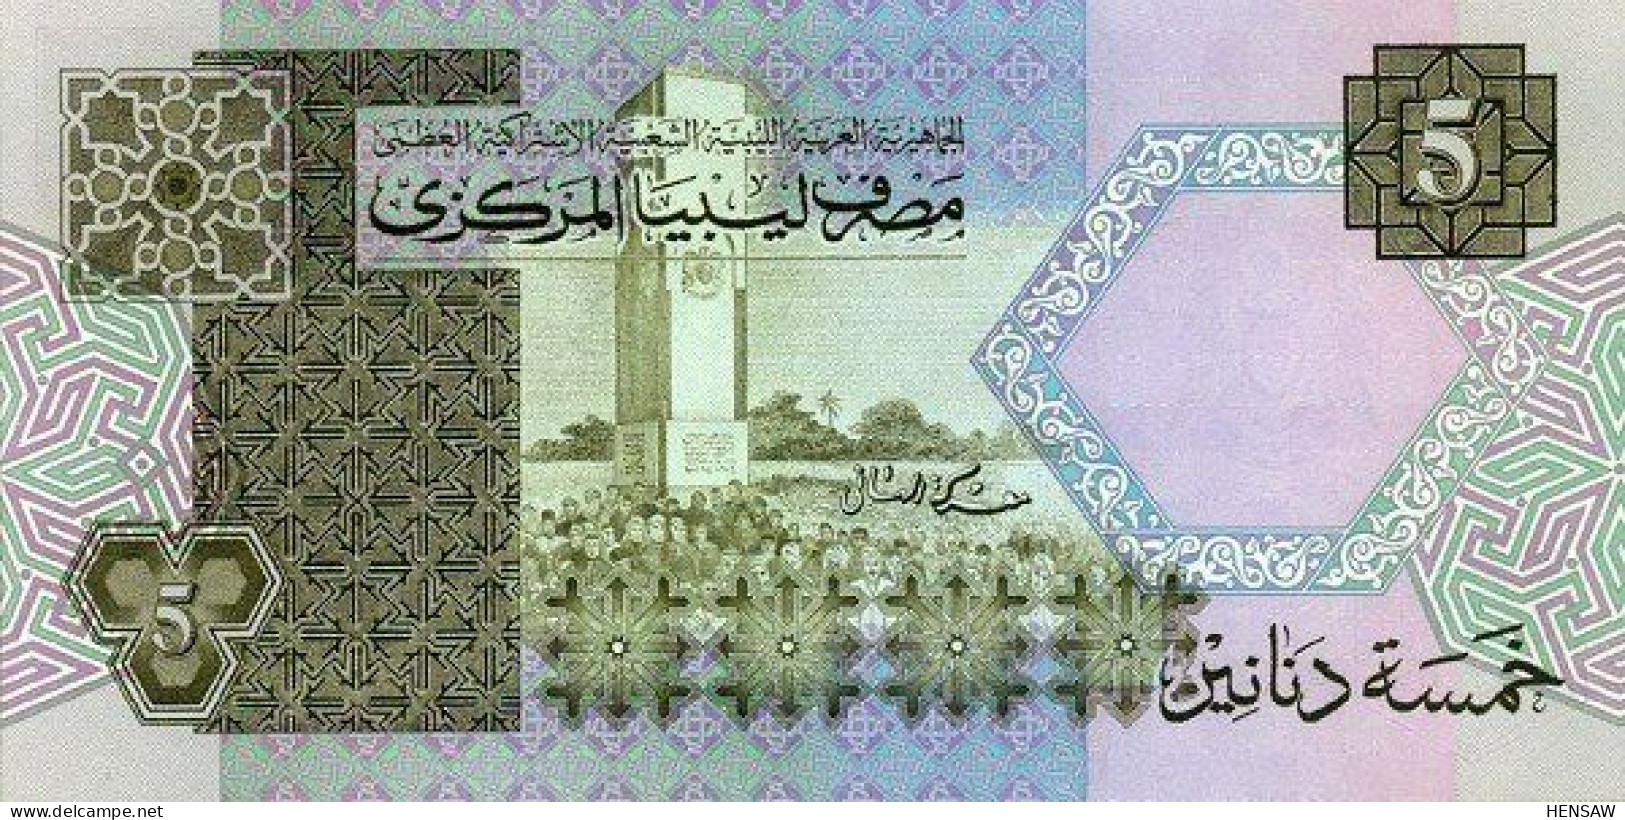 LIBYA 5 DINARS 1991 P 60c NUEVO UNC SC - Libia